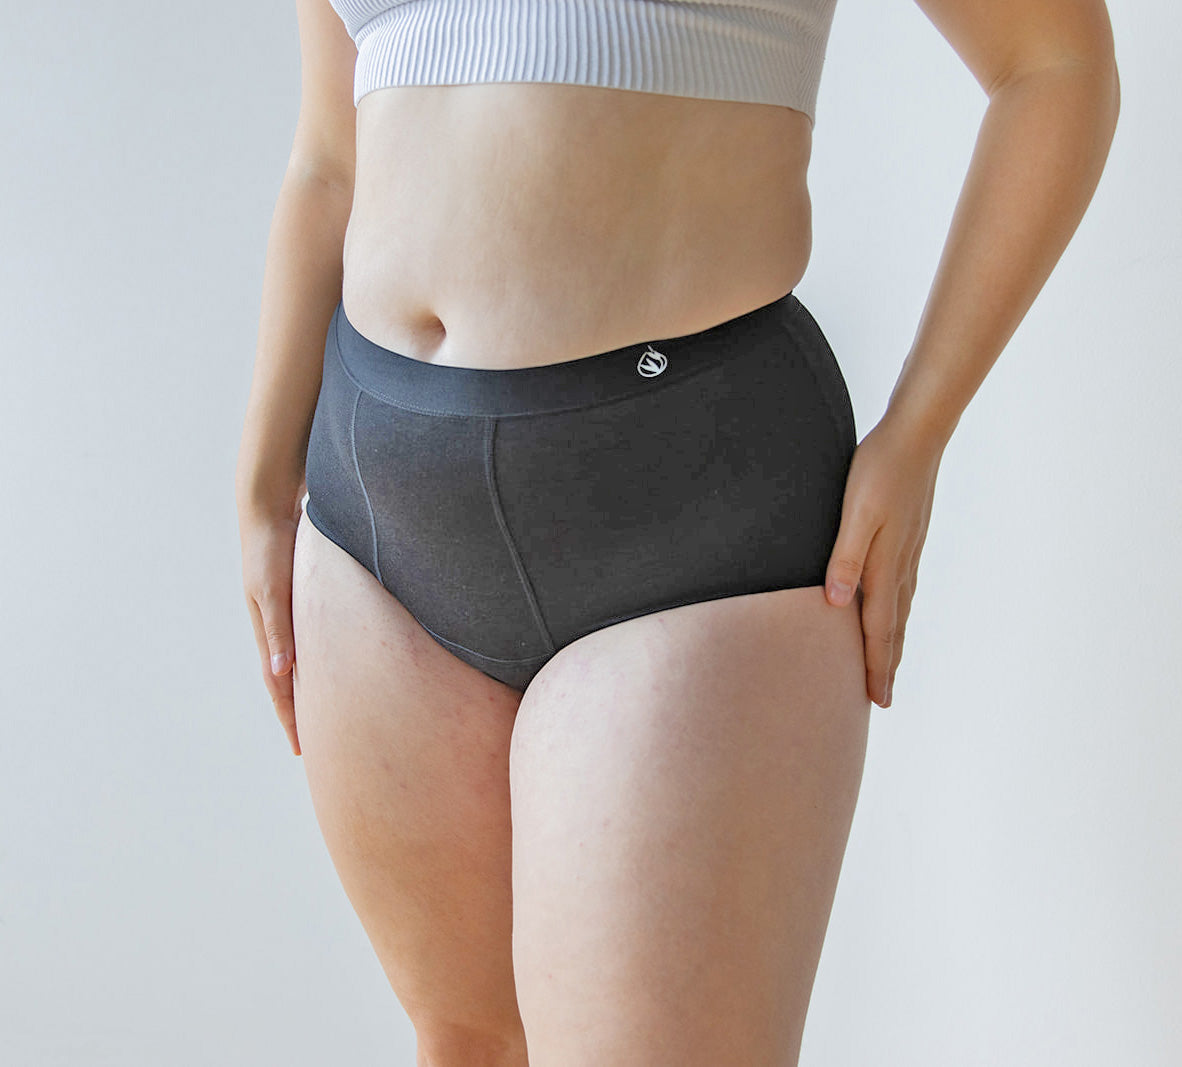 Leak-proof menstrual underwear women's bamboo fiber re